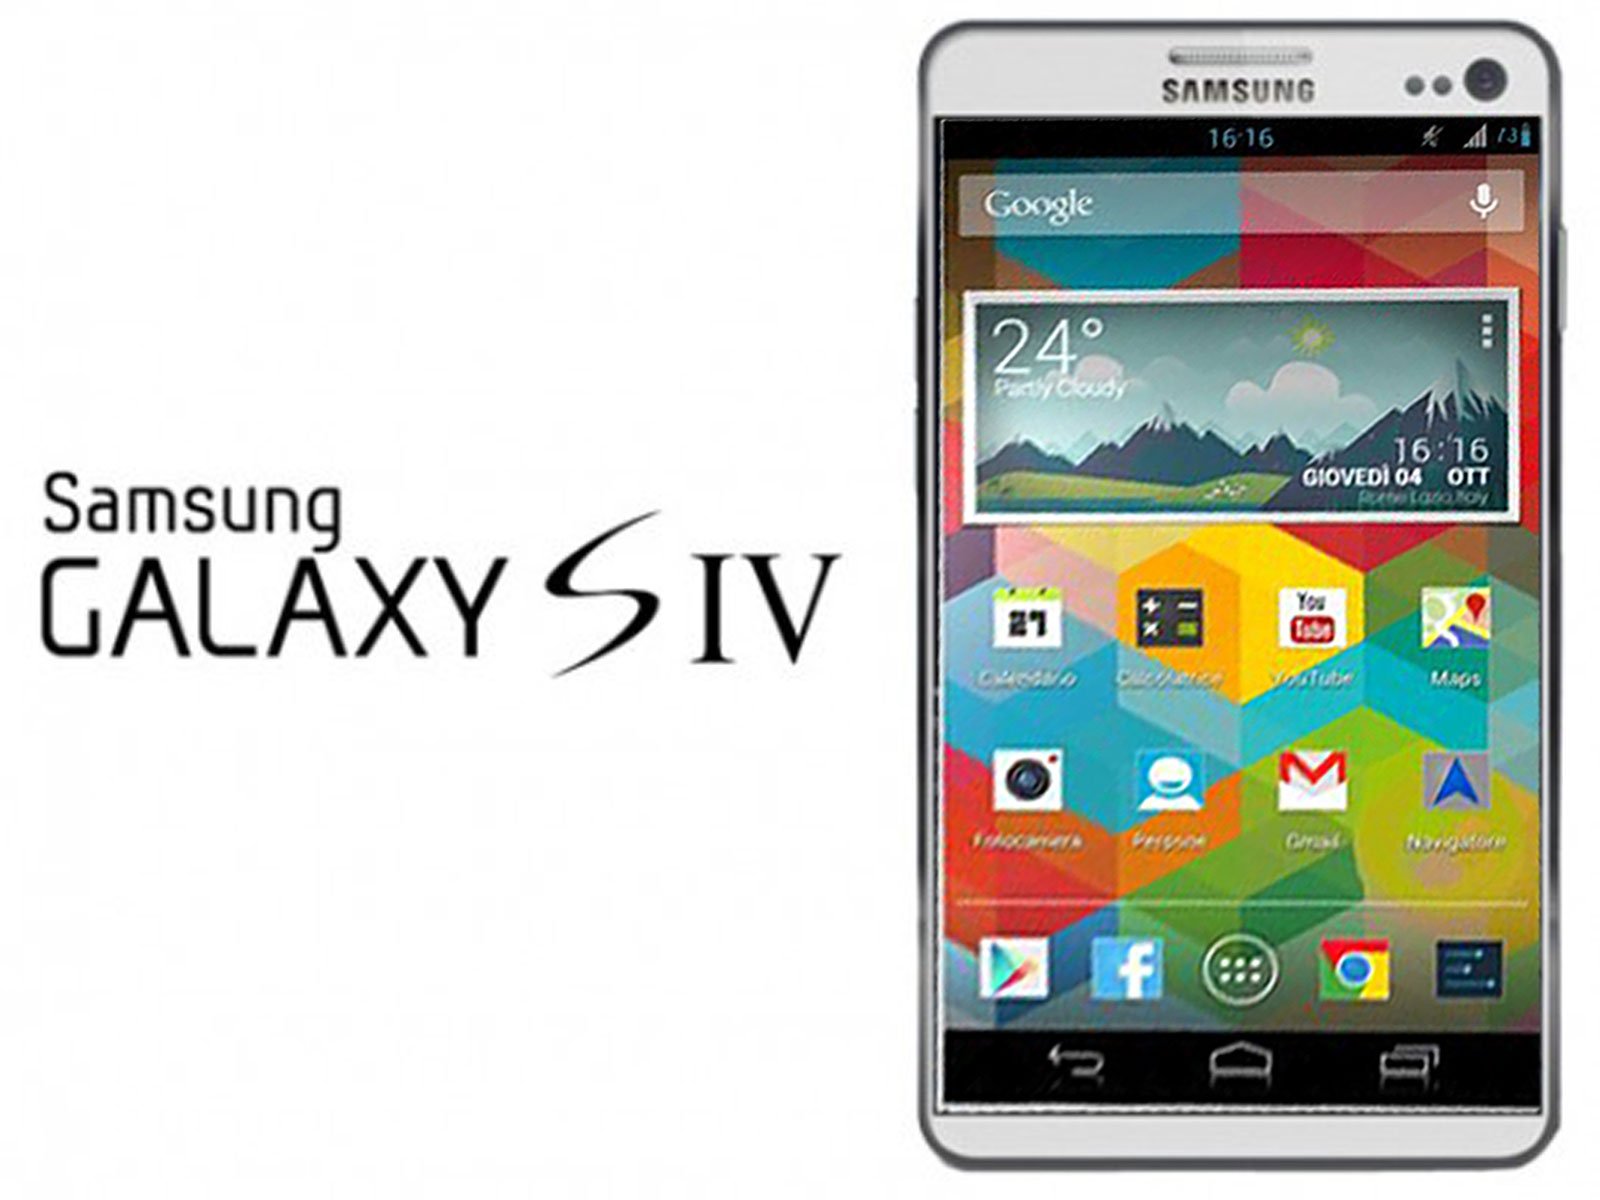 Samsung Galaxy S4 yeni bir tasarımla mı kullanıcı karşısına çıkacak?